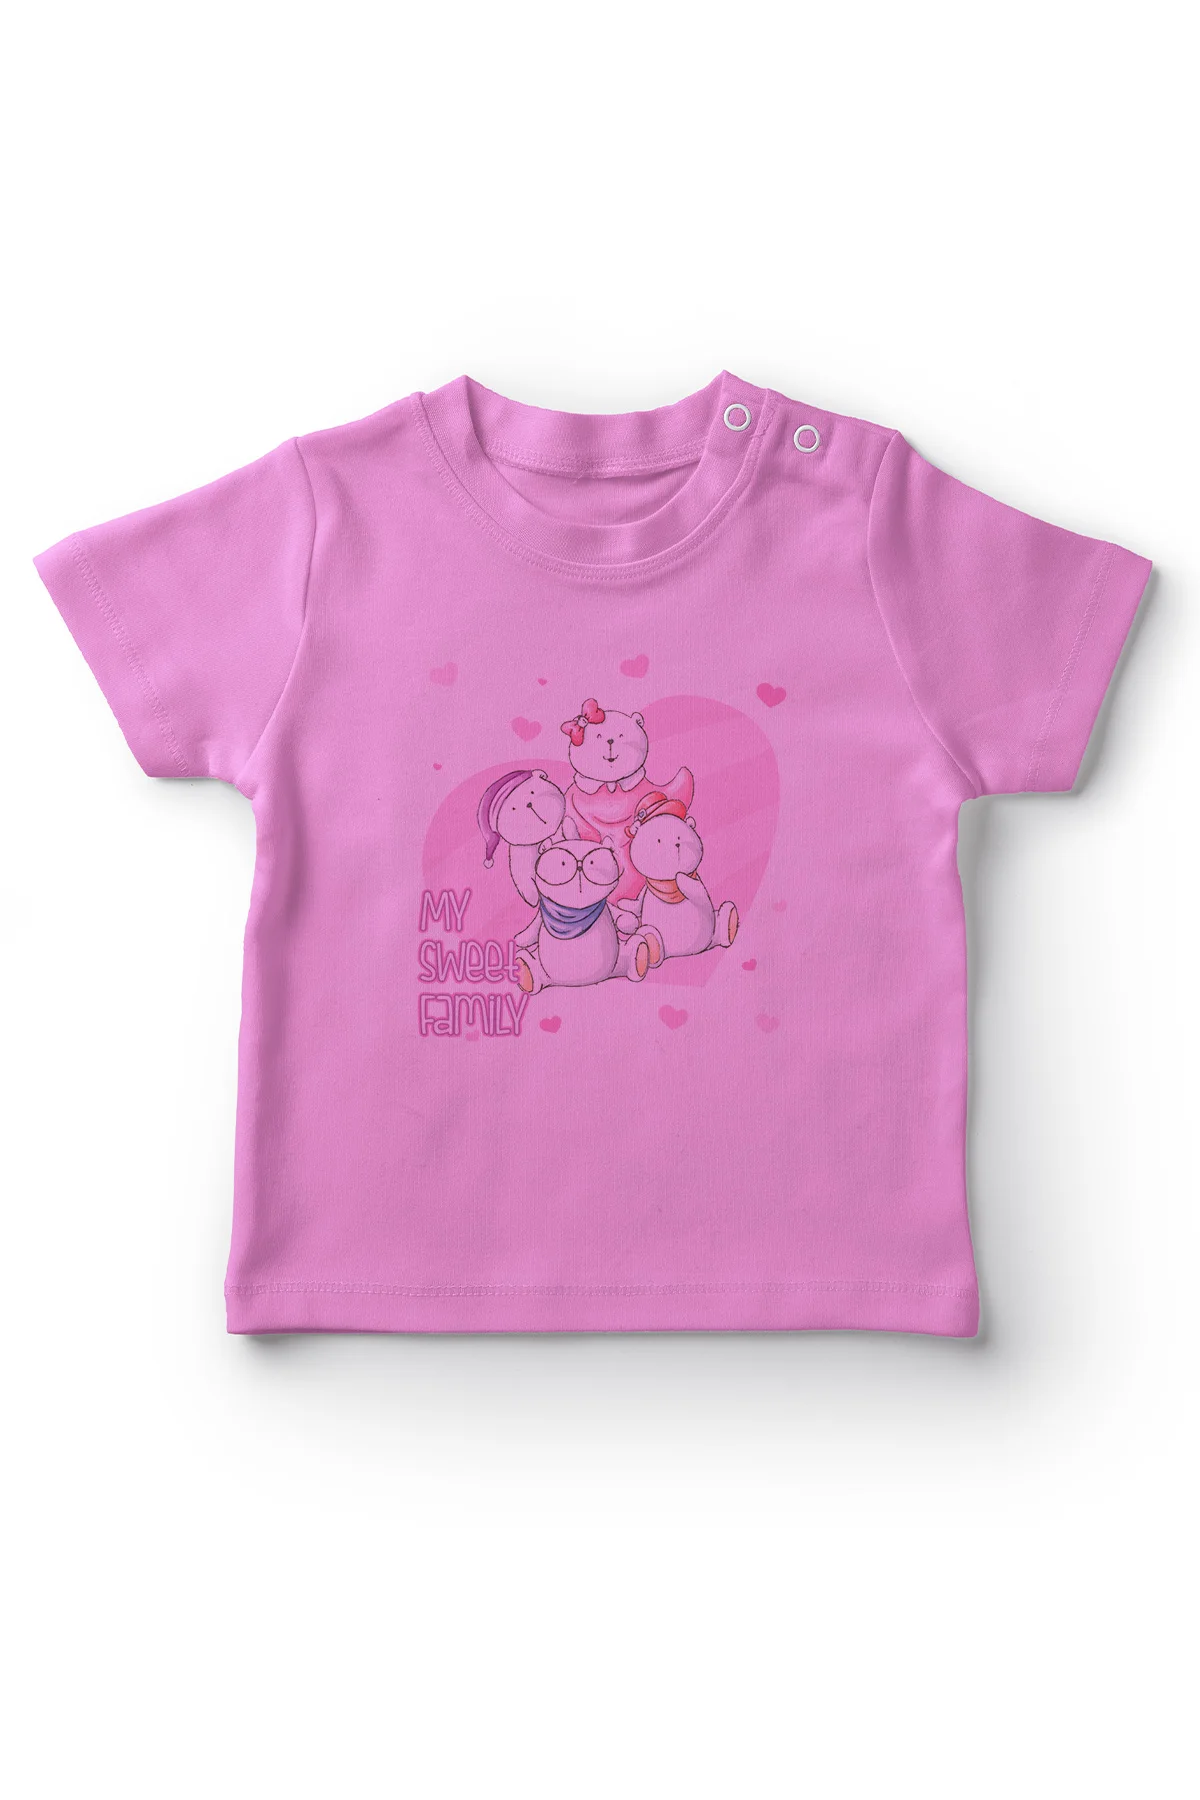 Angemiel/Милая семейная футболка для маленьких девочек розового цвета | Детская